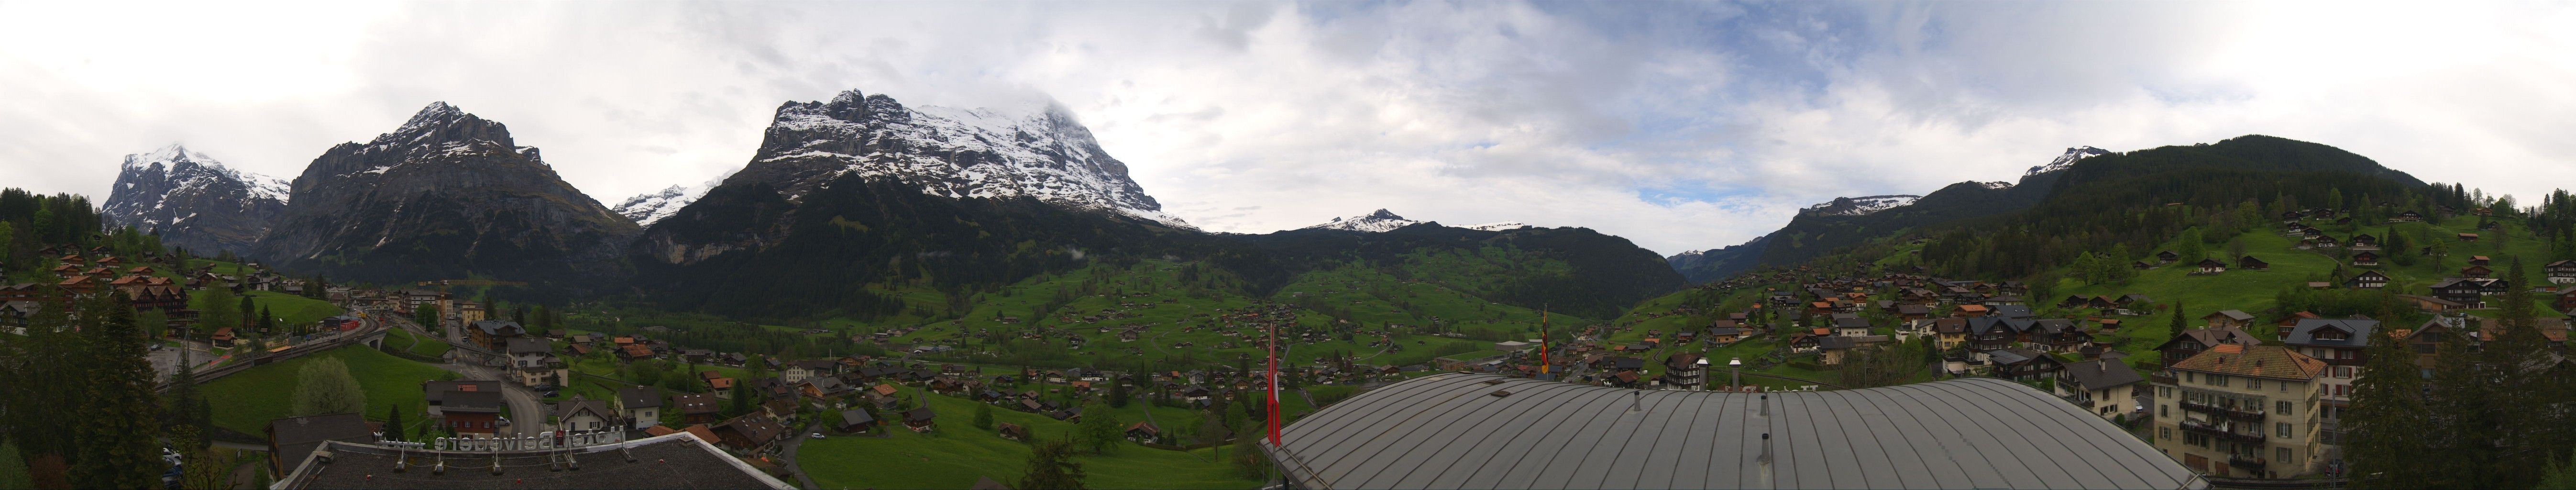 Grindelwald: Belvedere Swiss Quality Hotel Grindelwald - Eiger - Wetterhorn - Kleine Scheidegg - Männlichen